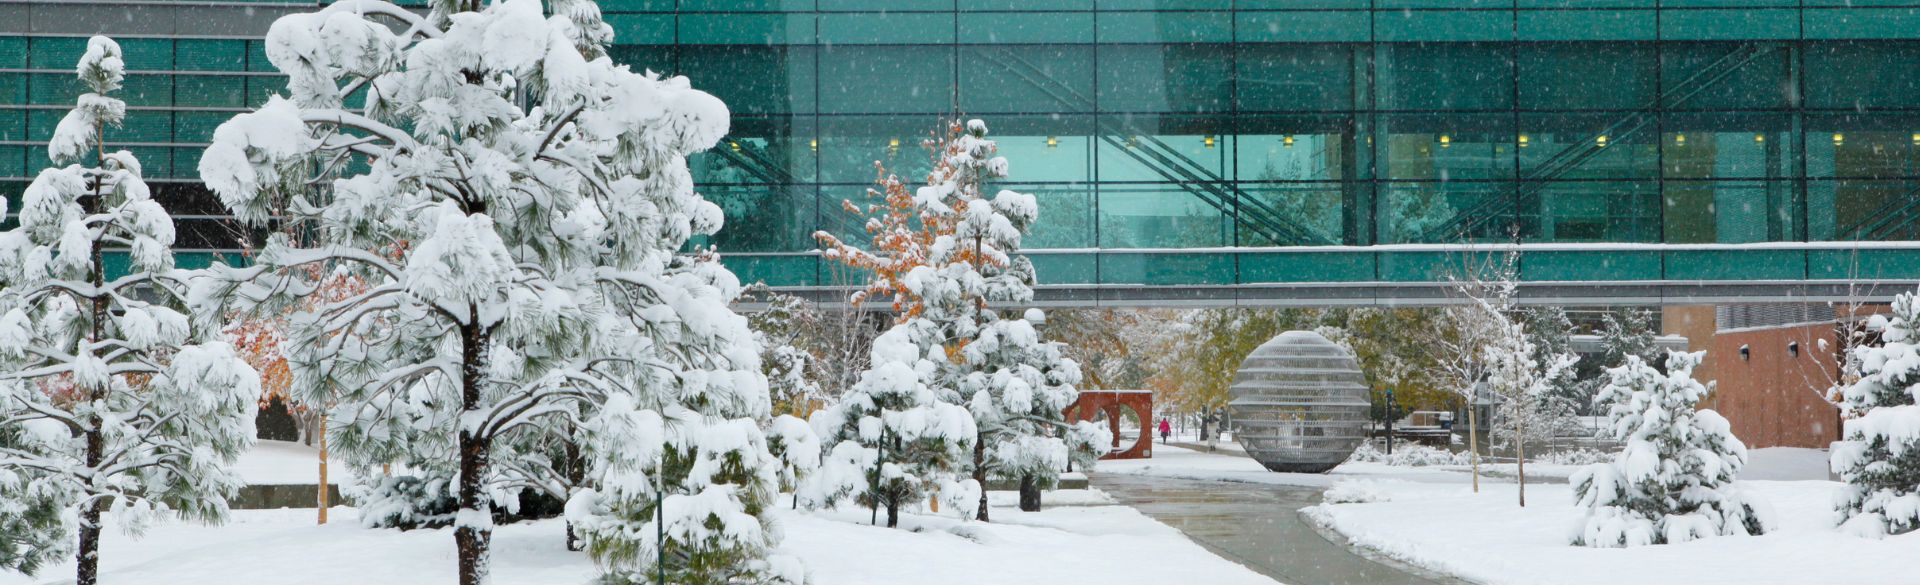 Anschutz Campus in winter